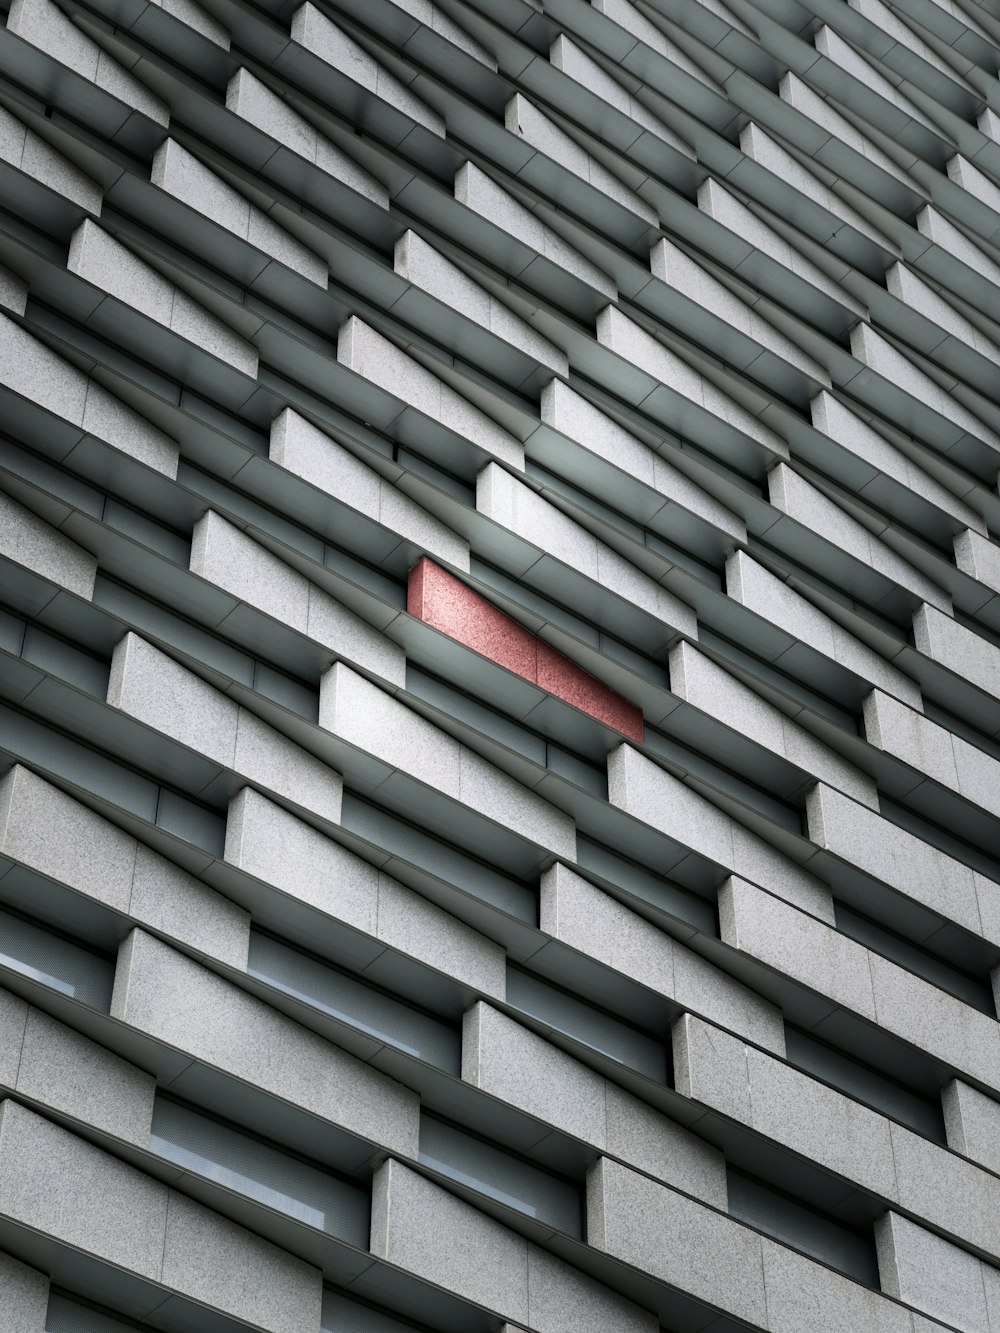 um objeto vermelho está saindo da lateral de um prédio